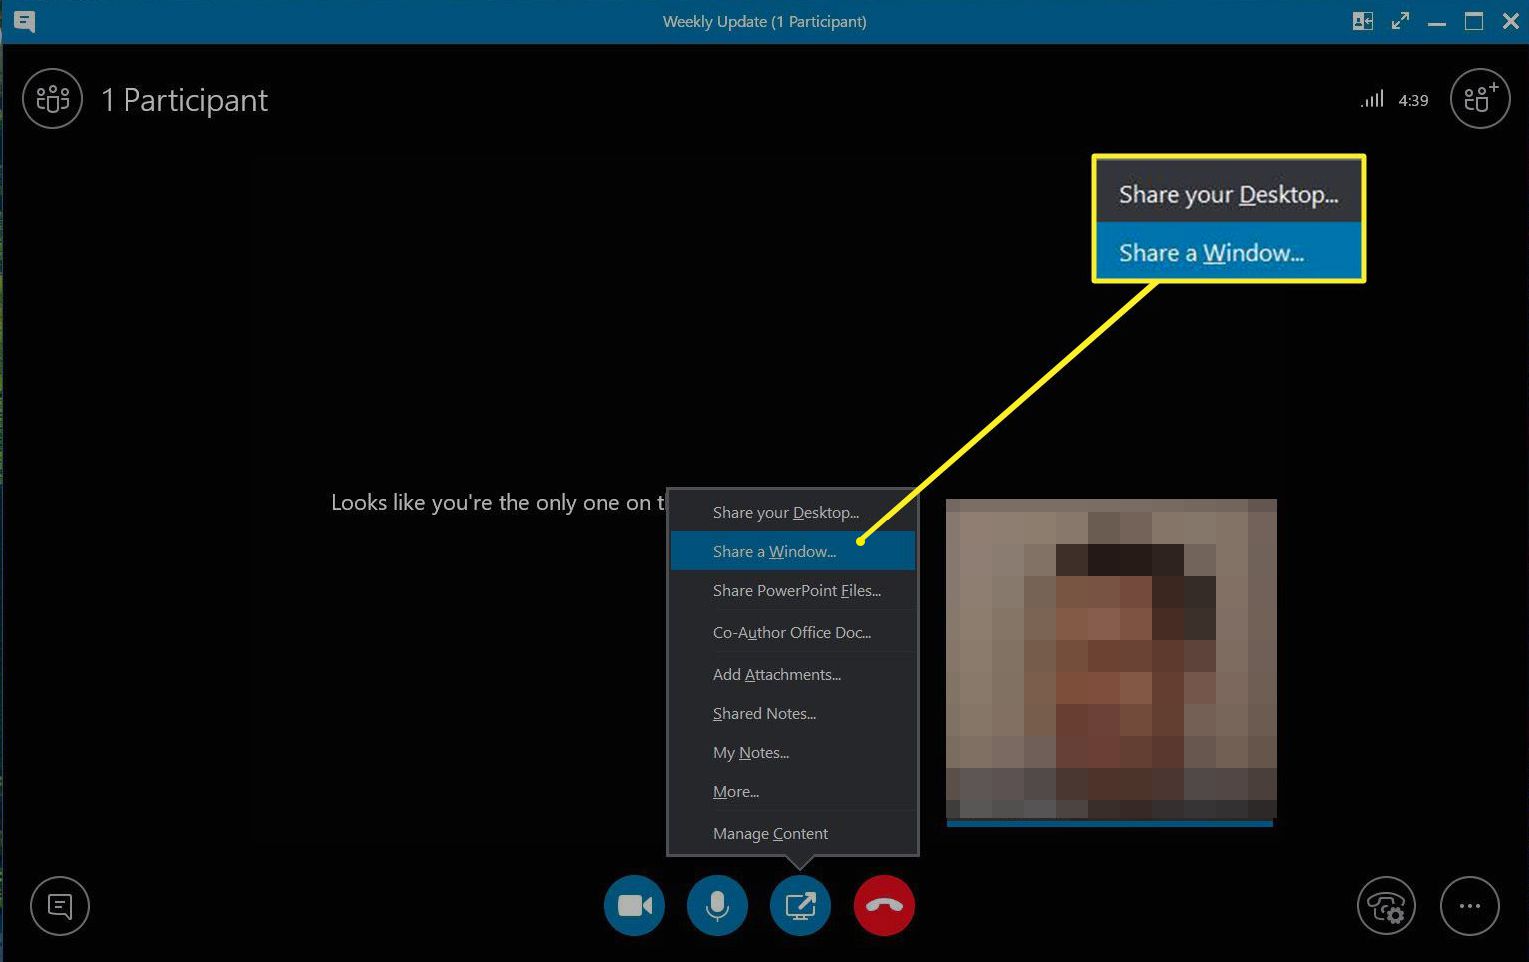 Skype med kommandona Dela ditt skrivbord och Dela ett fönster markerade